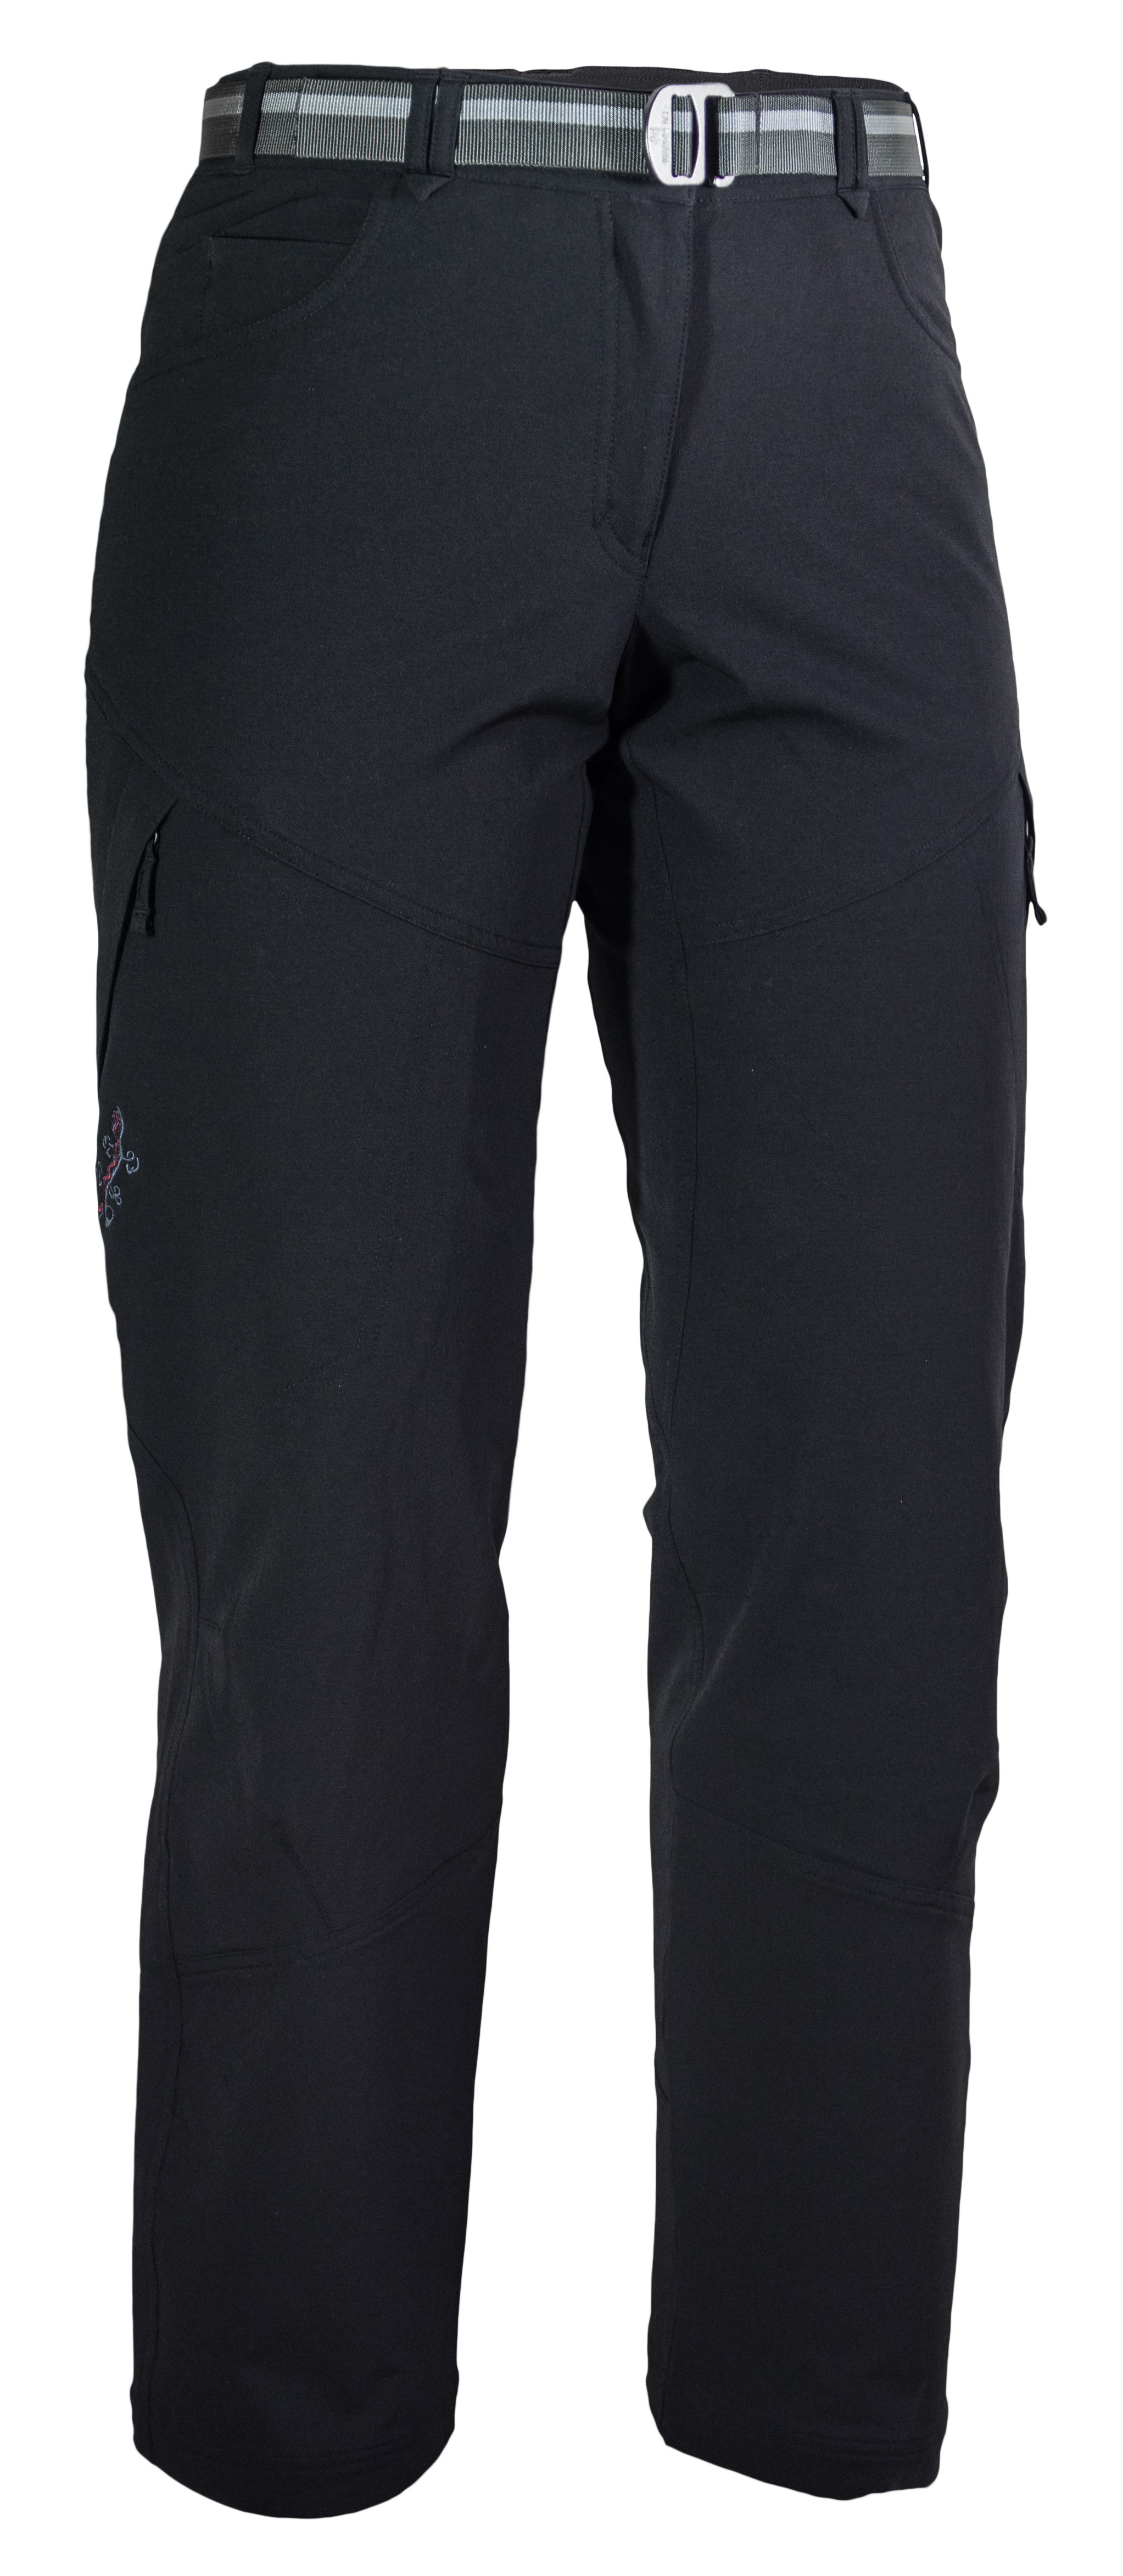 Dámské kalhoty Warmpeace Torpa II neukončená délka Barva: Black, Velikost: S